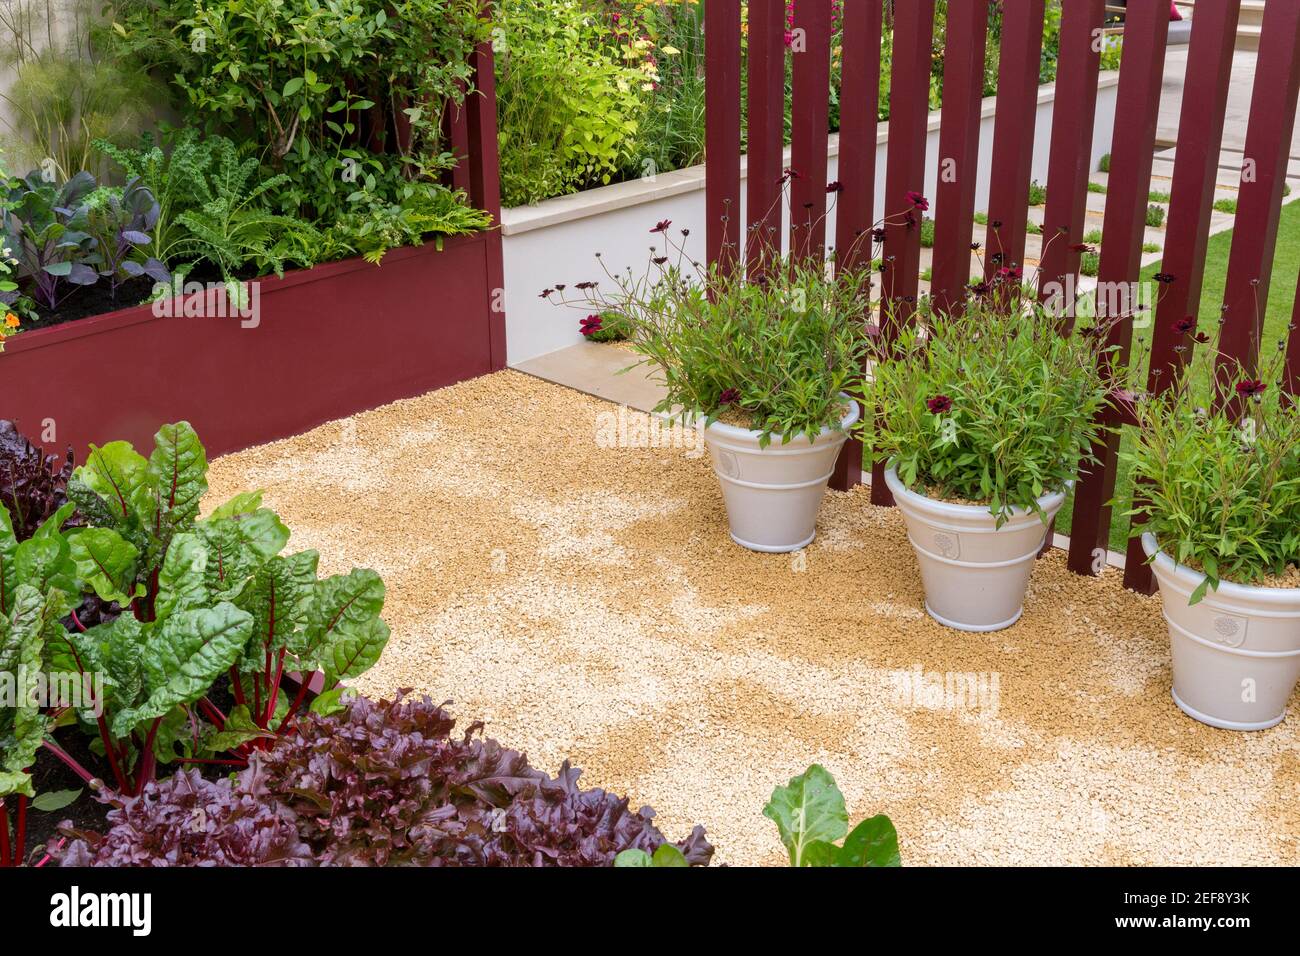 Petits lits surélevés modernes dans un jardin potager urbain cultivant de la laitue de blette avec des fleurs dans des récipients de pots sur le chemin de gravier - été - Angleterre Royaume-Uni Banque D'Images